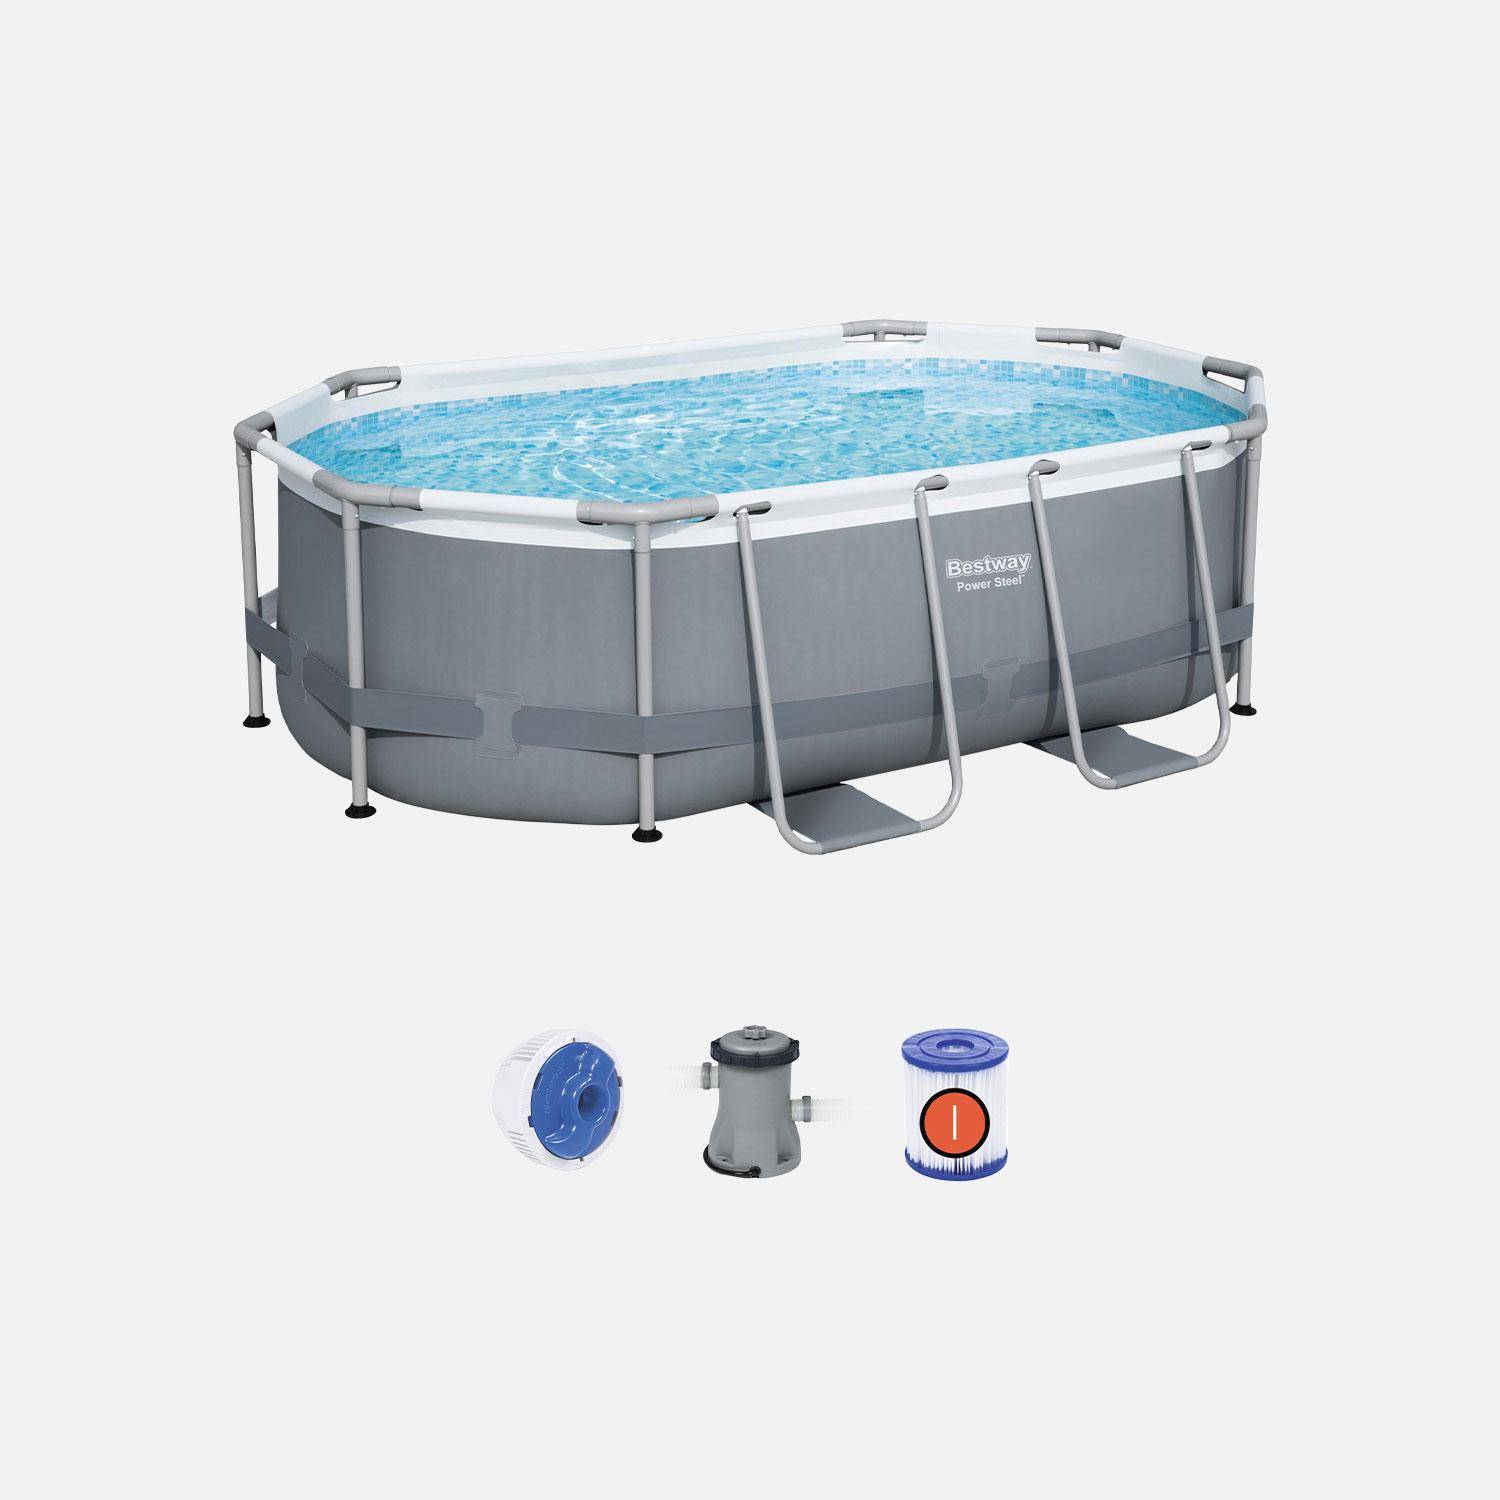 Kit completo de piscina BESTWAY - Spinelle gris - piscina tubular ovalada 3x2 m, bomba de filtración y kit de reparación incluidos  Photo1